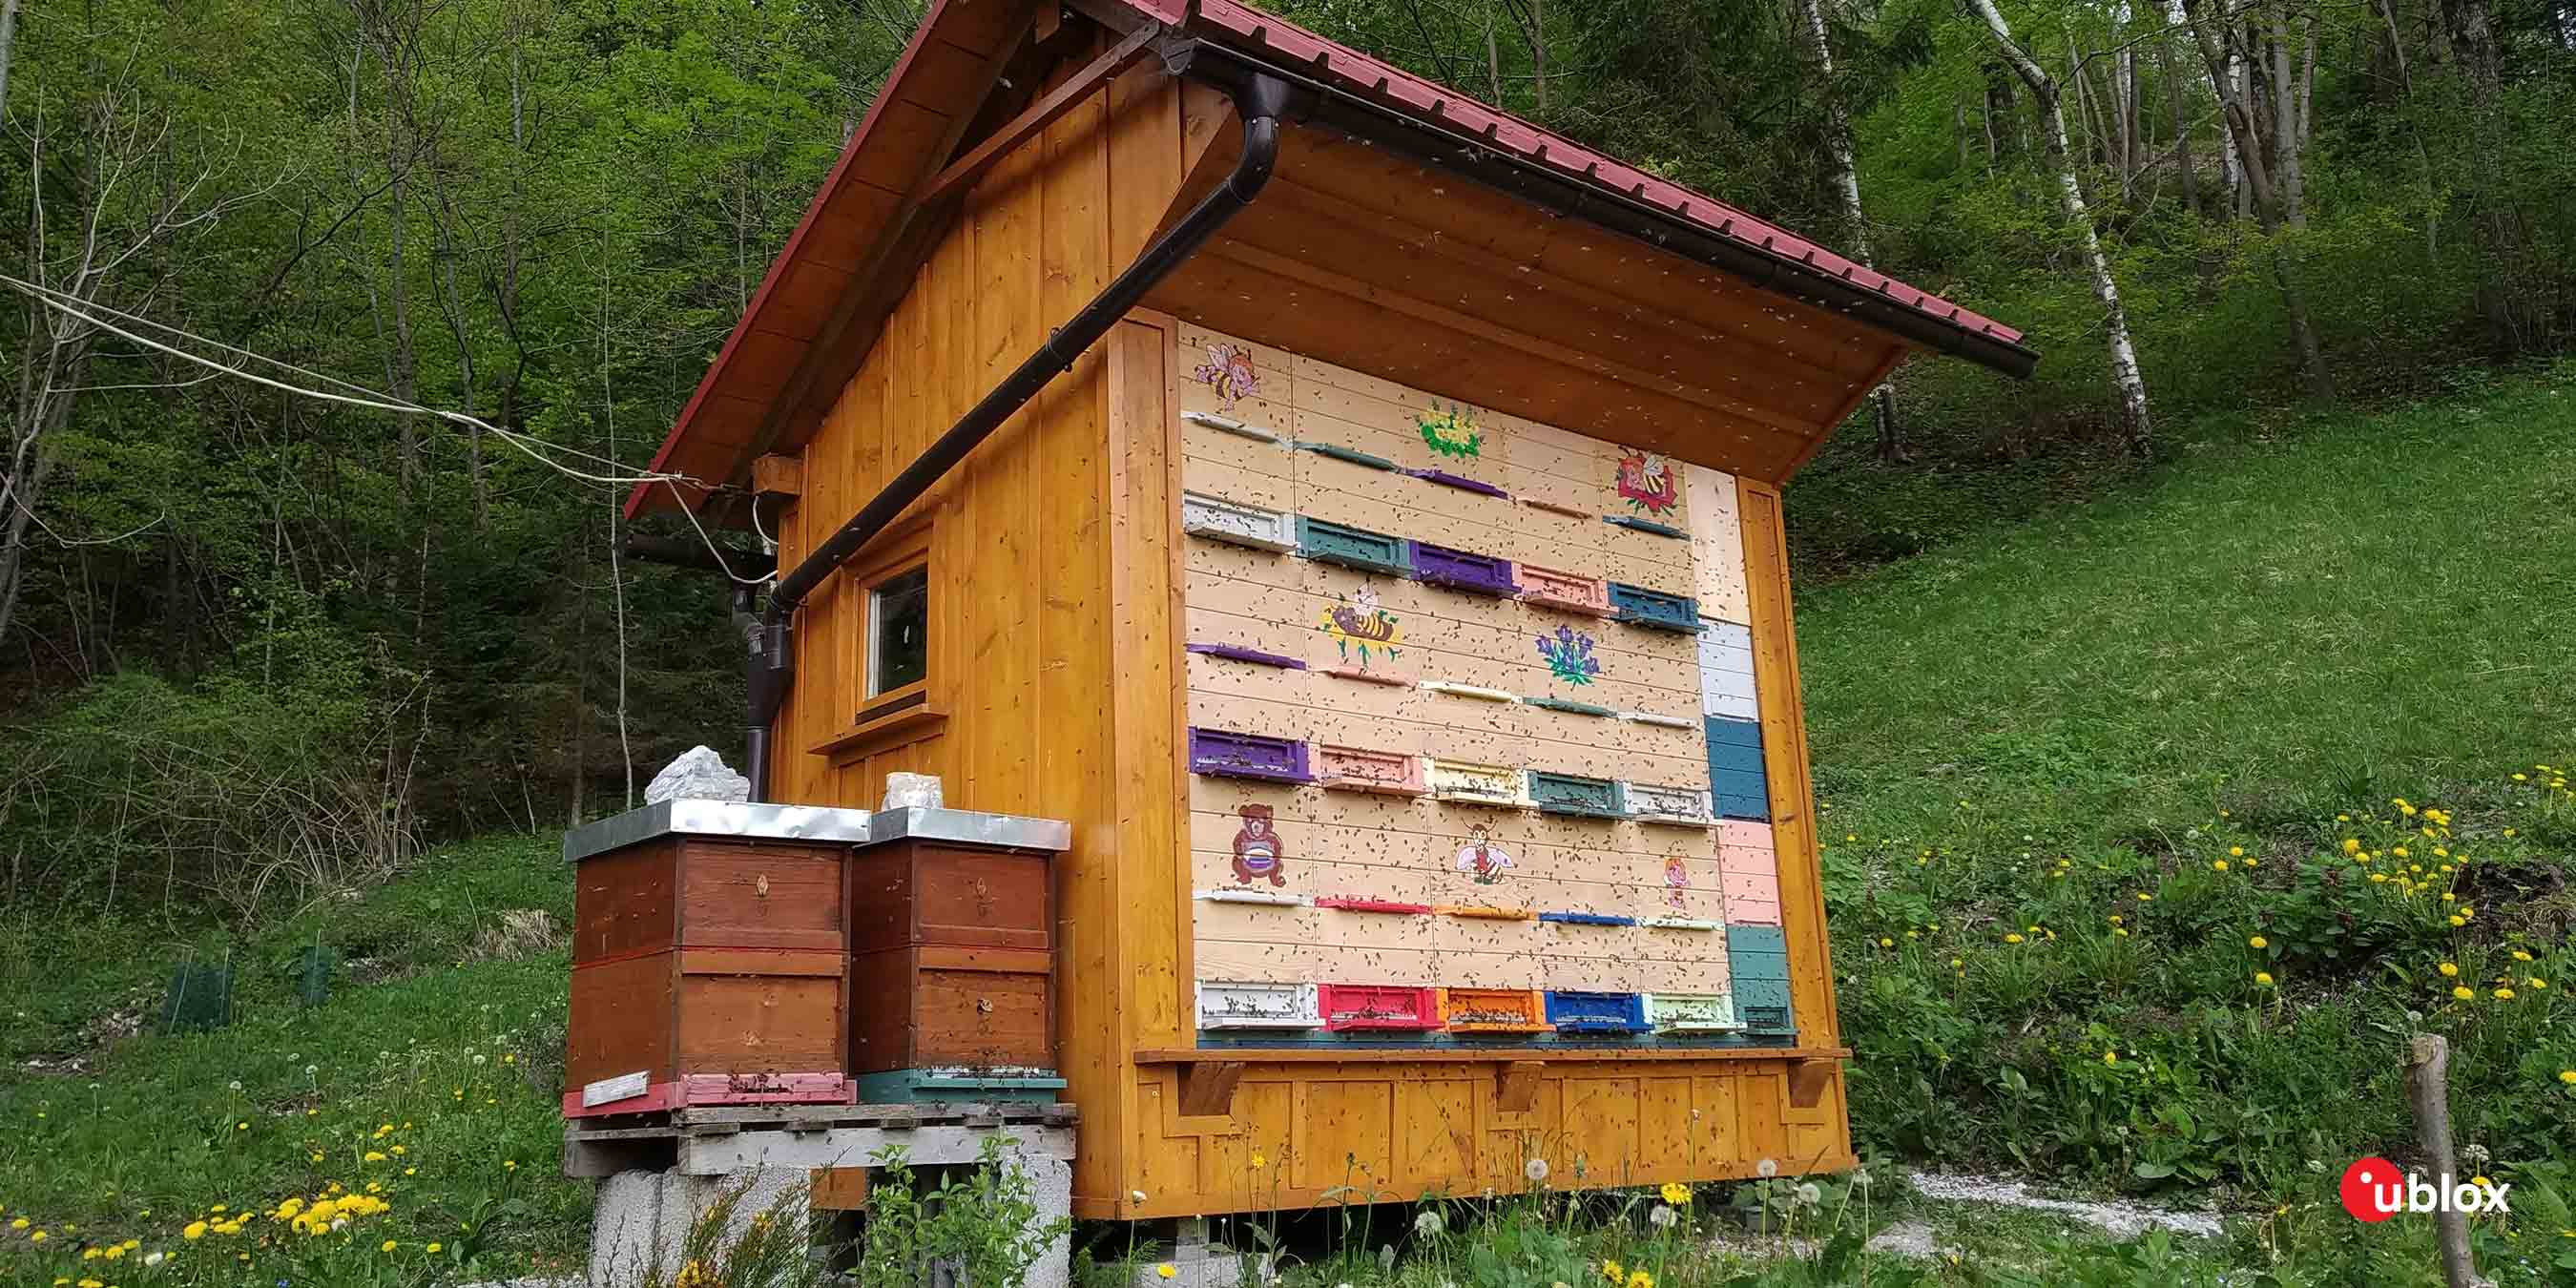 Slovenian unique beehive structure 